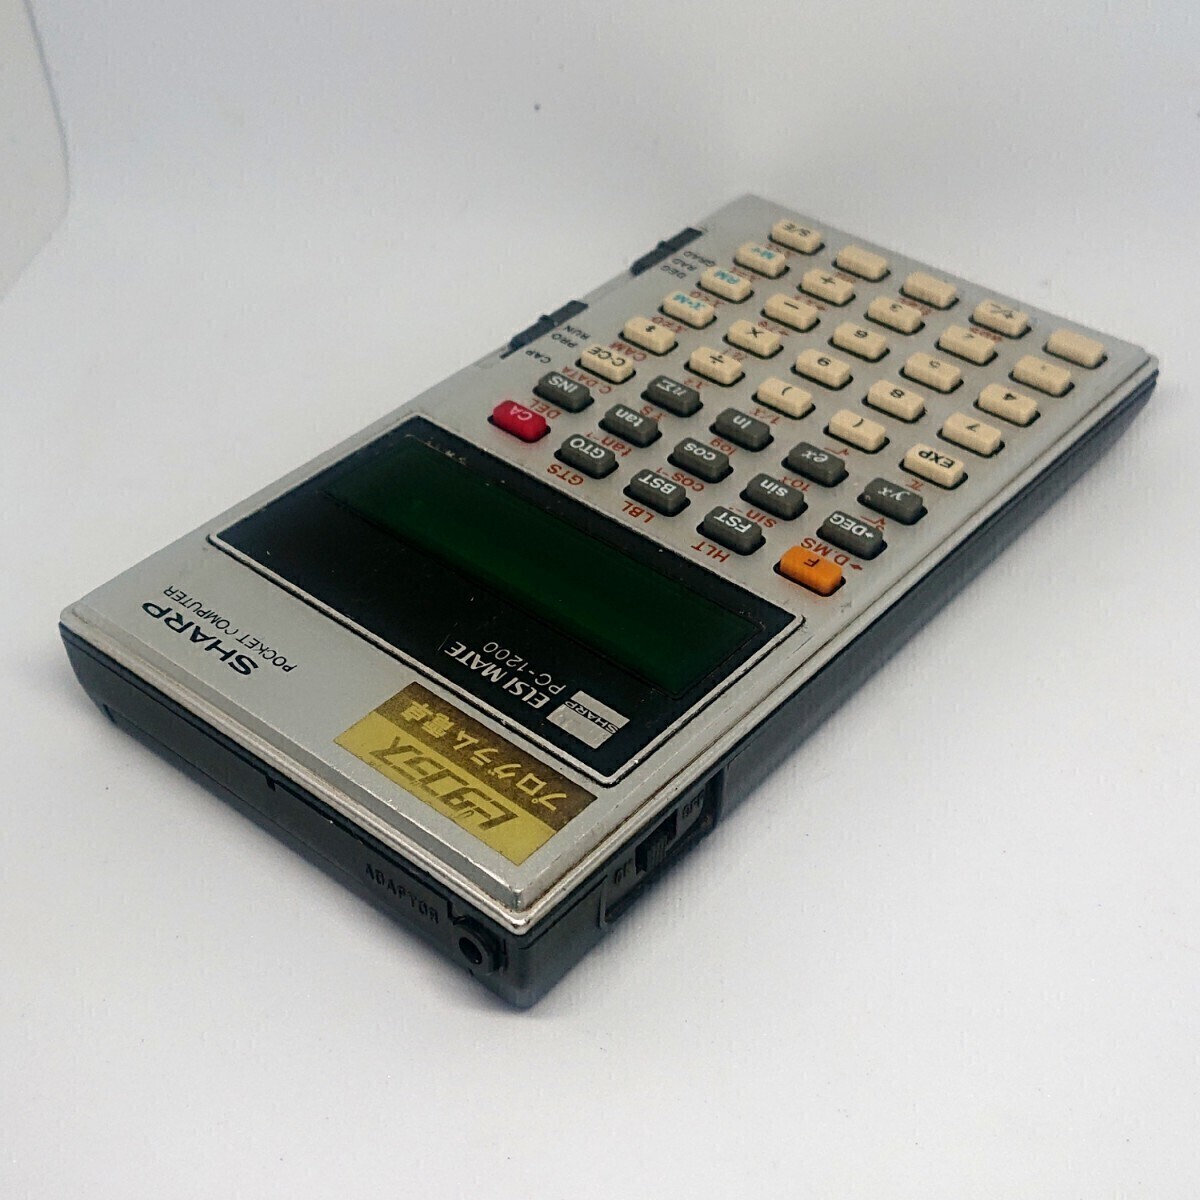 シャープ ピタゴラス 初代ポケットコンピューターSHARP PC-1200 1977年発売 プログラム電卓 関数電卓 _画像2